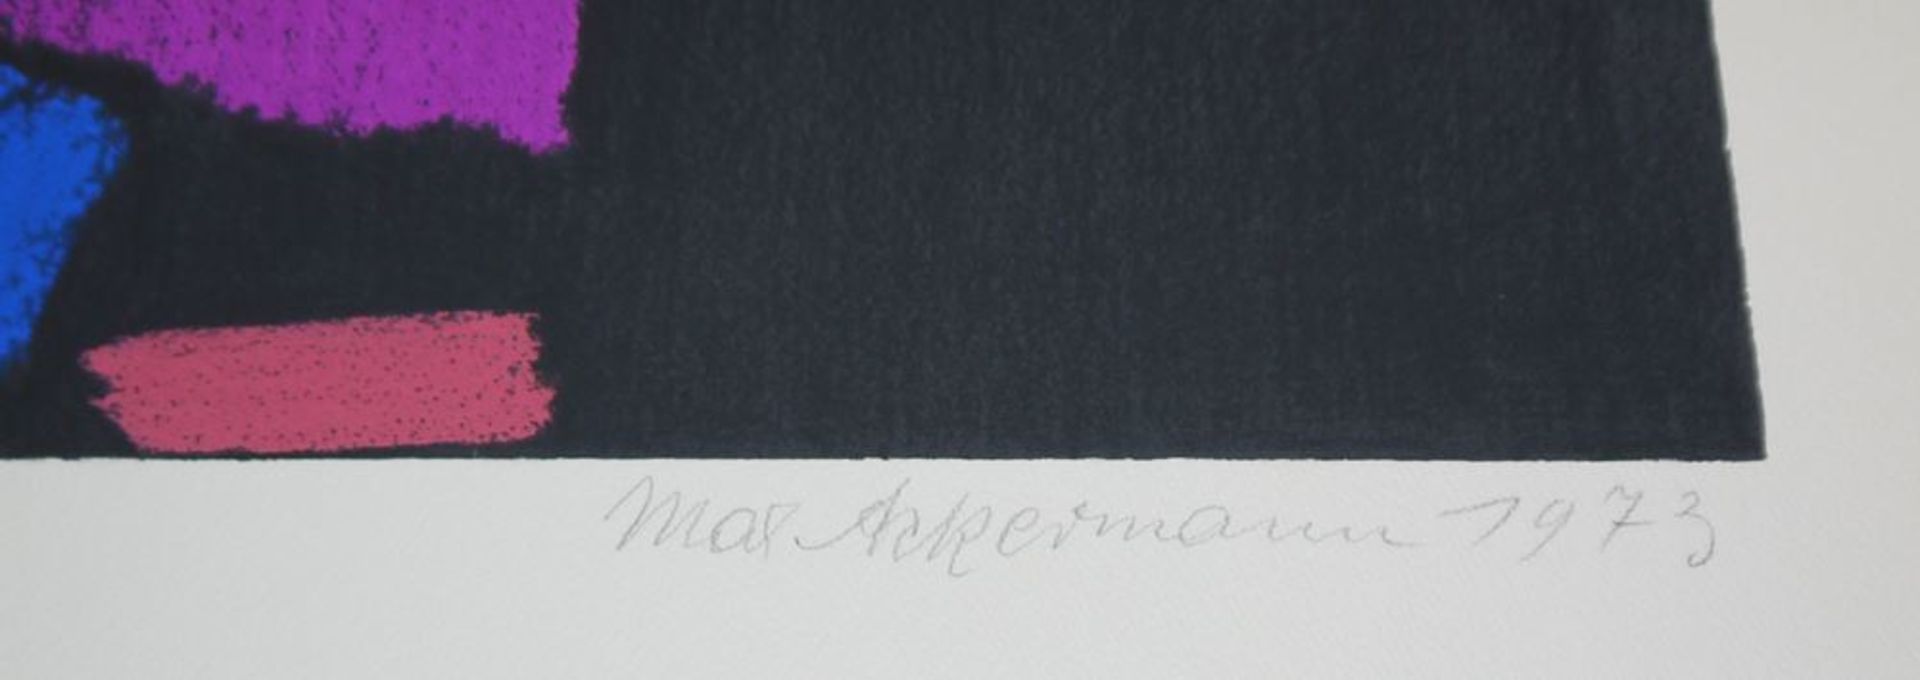 Max Ackermann, "Alla breve", signierte Farbserigraphie von 1973 - Bild 2 aus 2